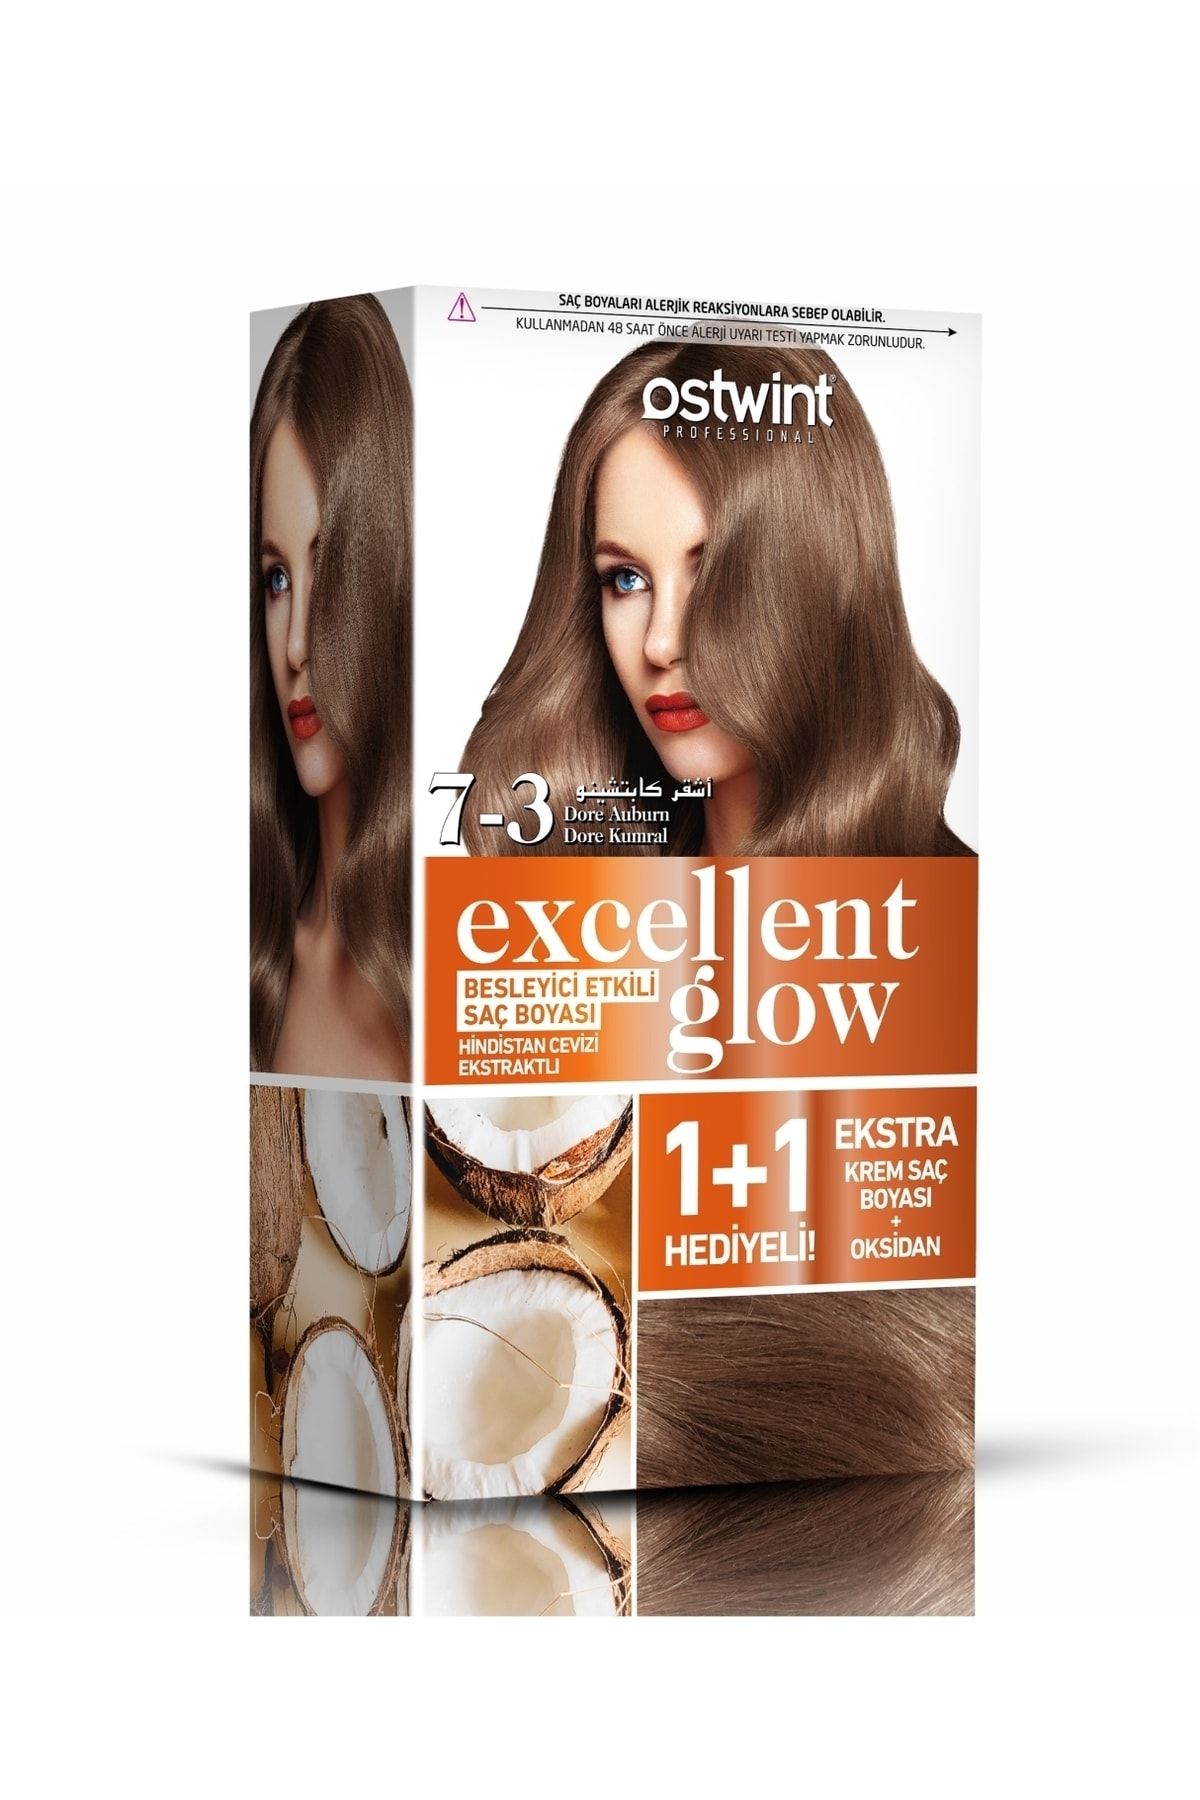 Ostwint Excellent Glow 1+1 Hediyeli Saç Boyası Seti No.7.3 Dore Kumral